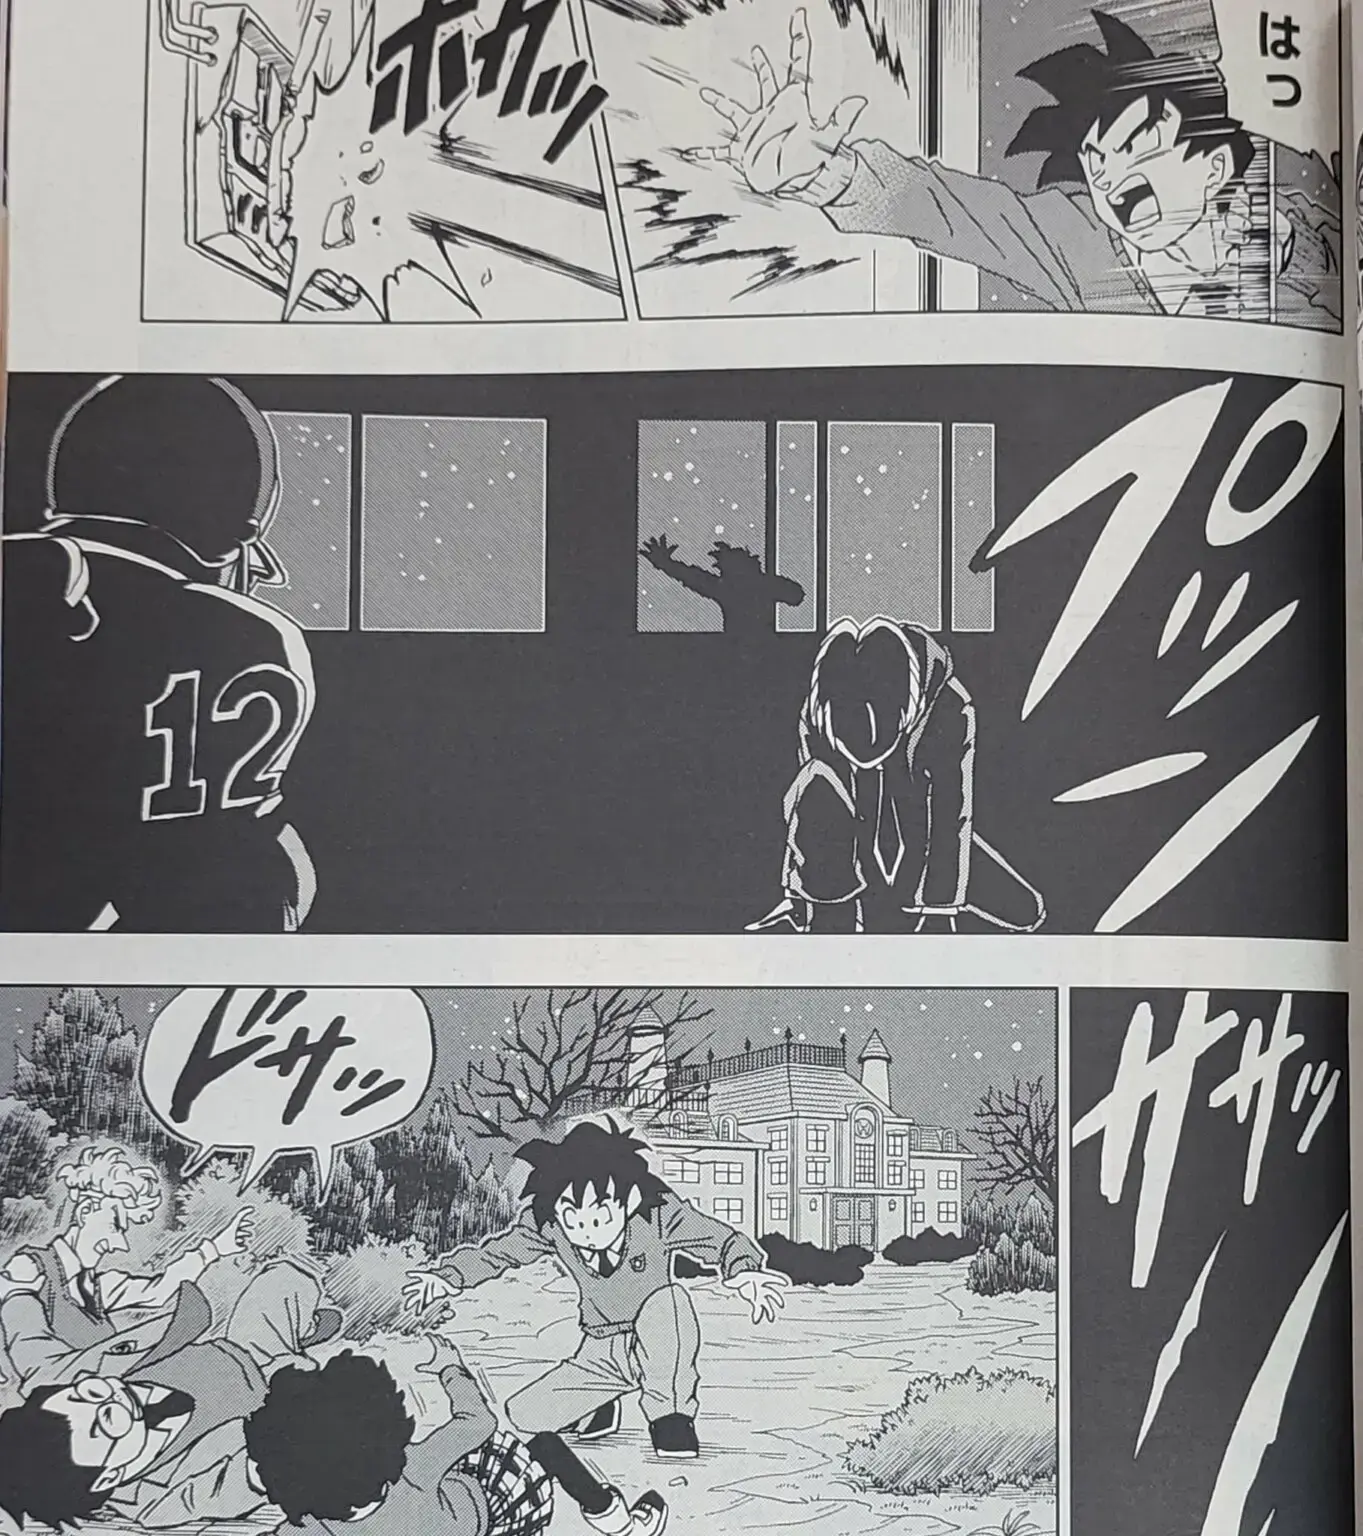 Dragon Ball Super chapitre 88 du manga a été dévoilé avec des images et un résumé ; Goten et Trunks sont des super-héros. 6 5